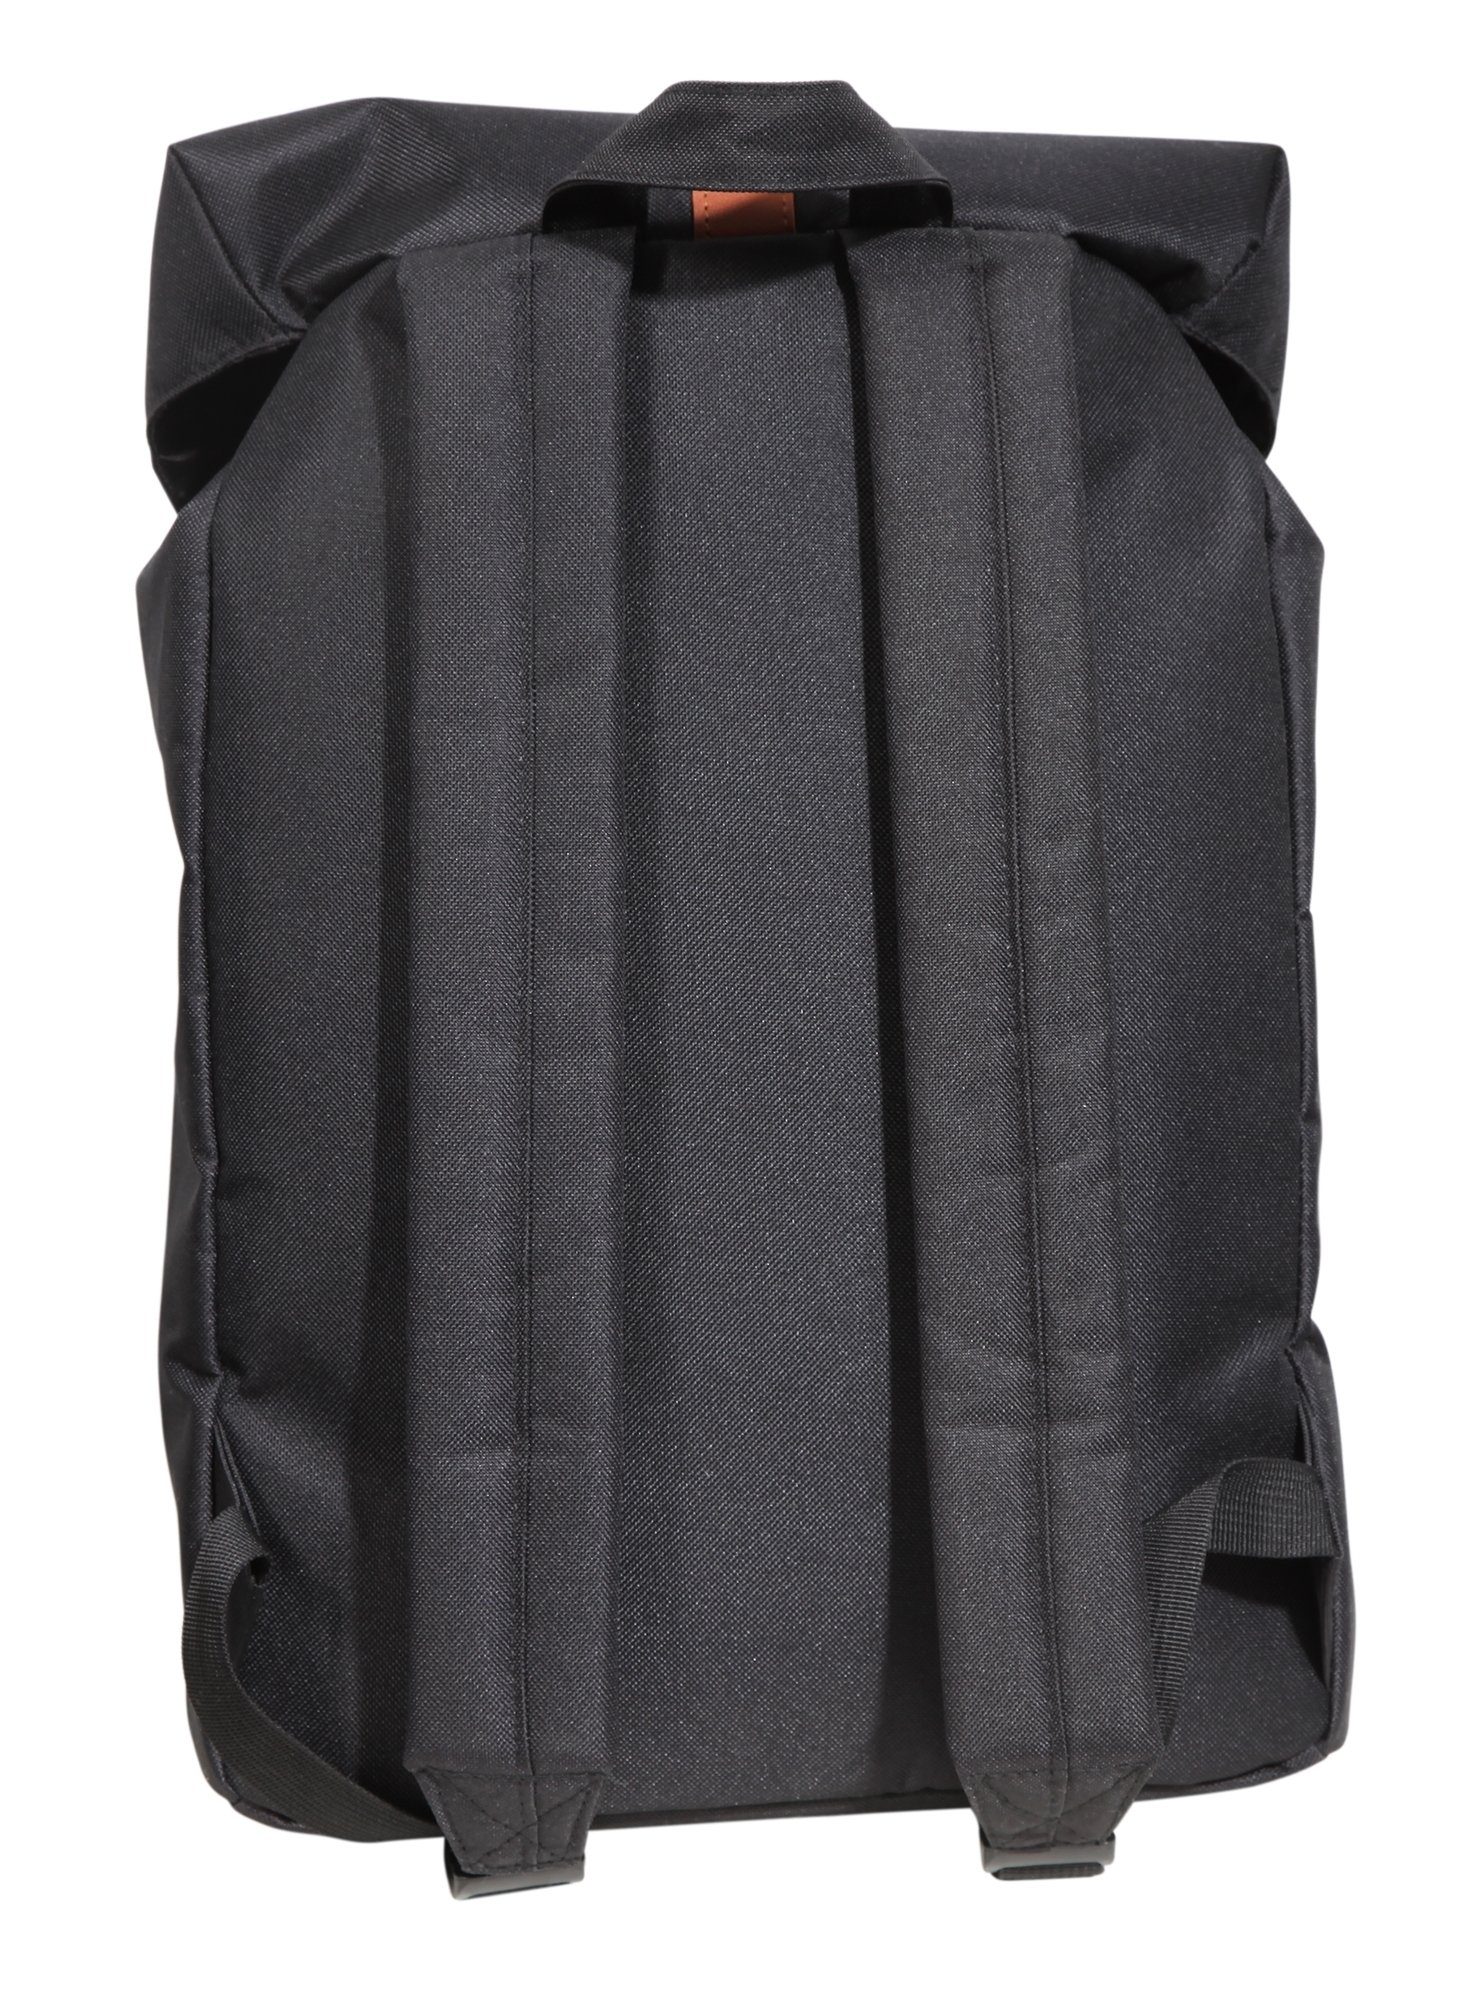 LEONARDO VERRELLI (einzeln) Polyester Unisex Rucksack Laptoptasche Laptopfach Tasche Schwarz mit aus Melli